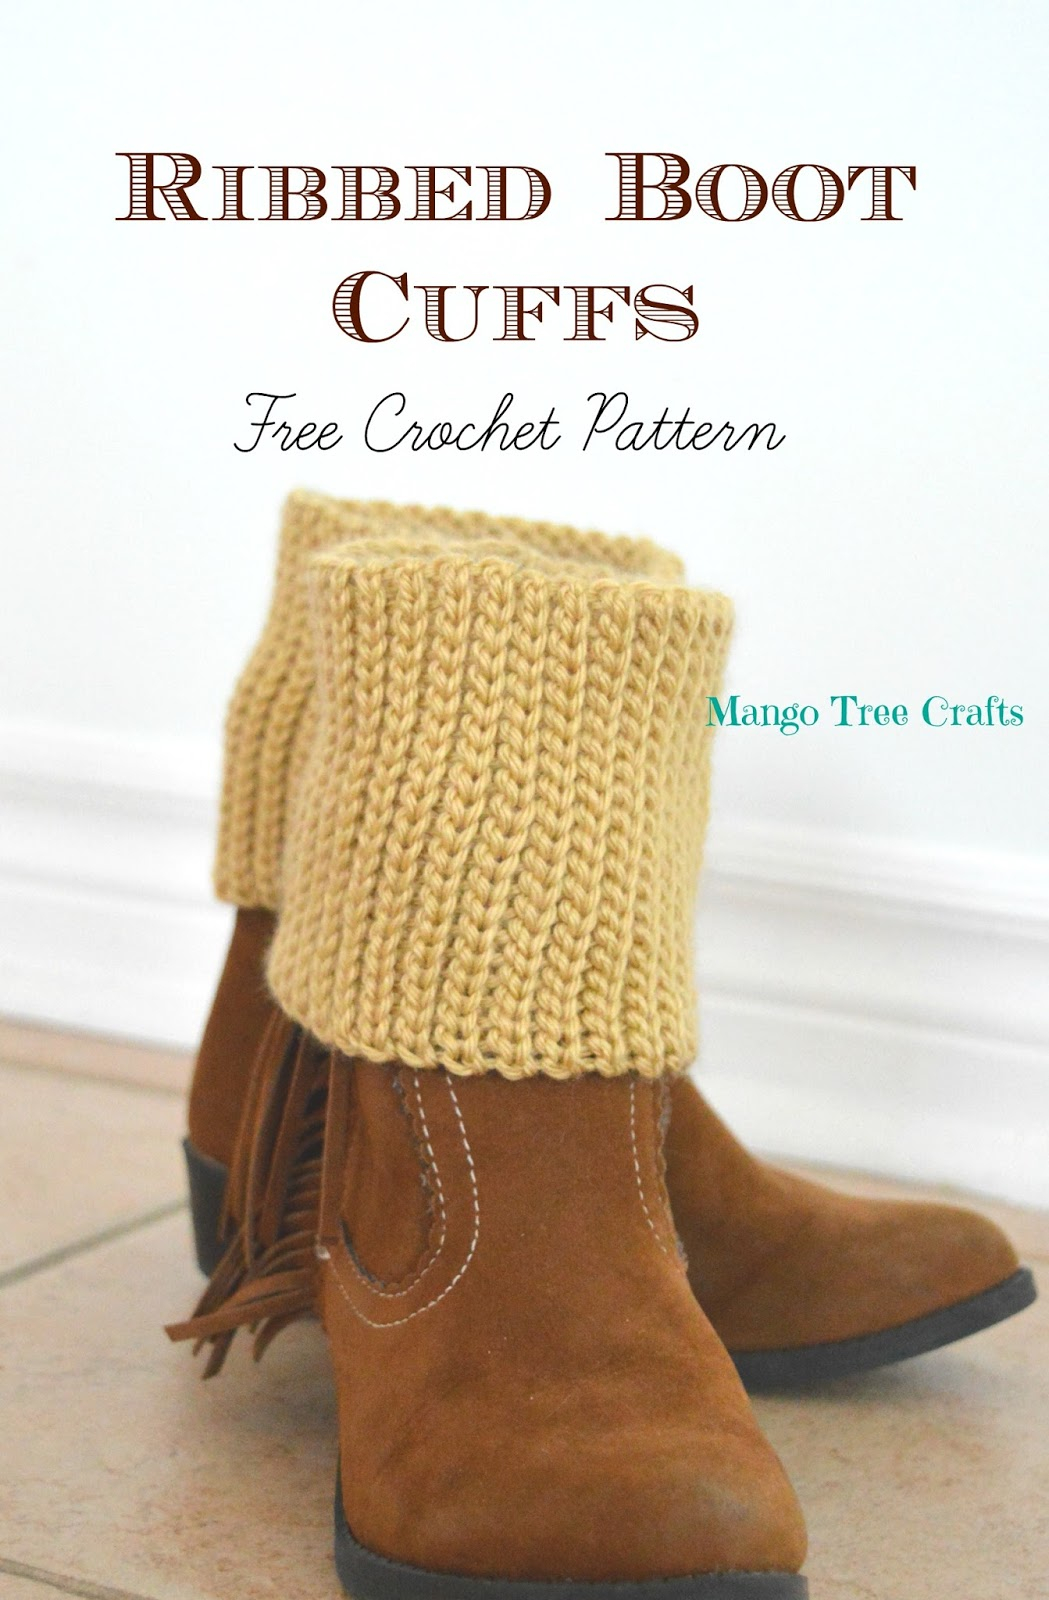 Free Crochet Boot Cuff Patterns Ribbed Boot Cuffs Free Crochet Pattern